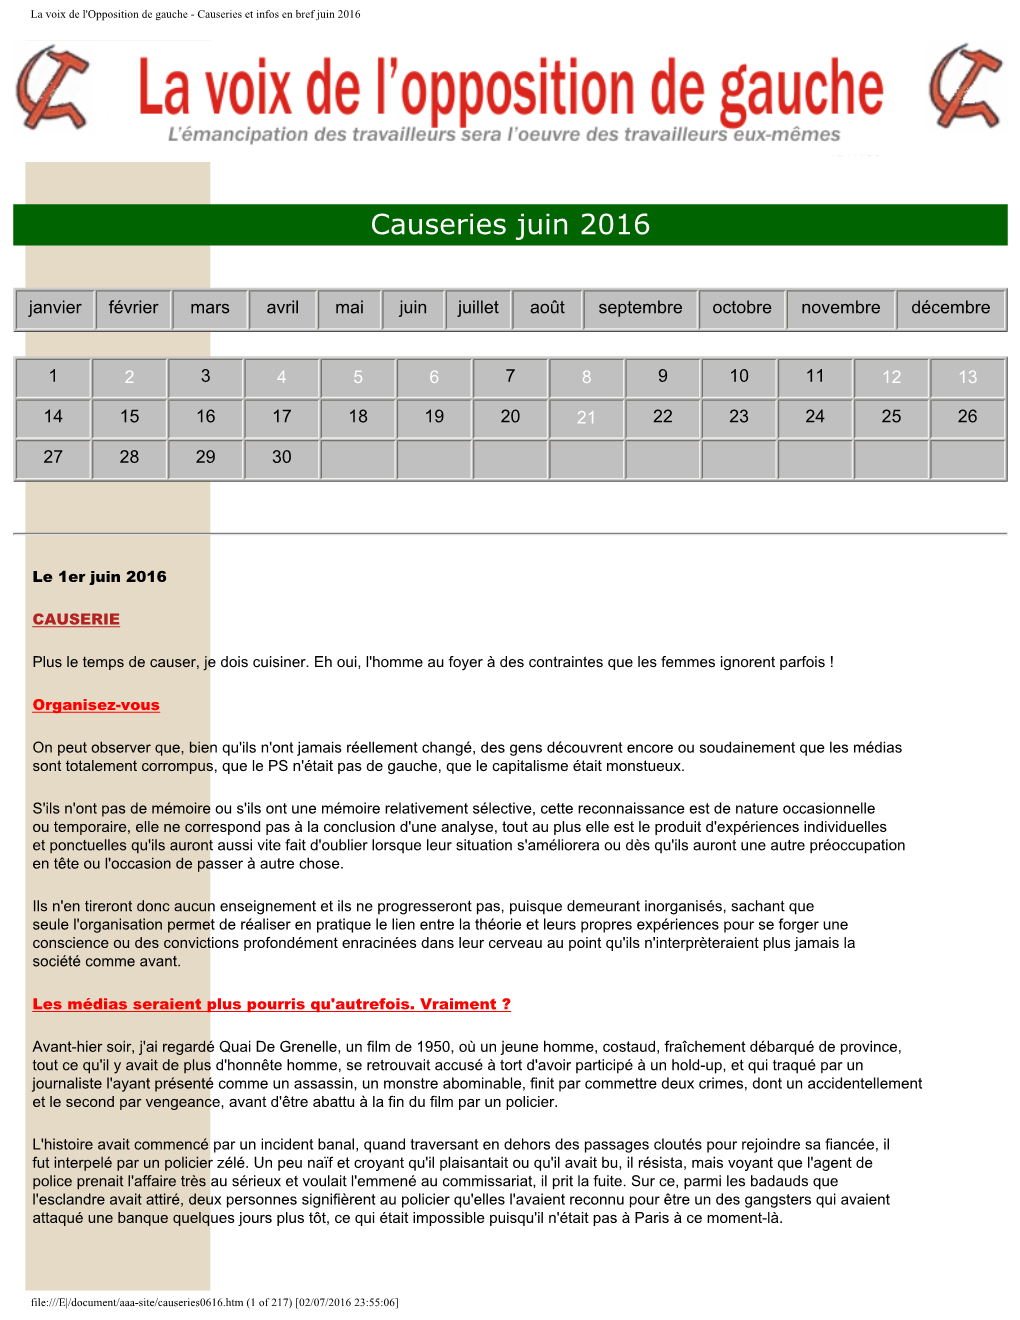 Causeries Et Infos En Bref Juin 2016